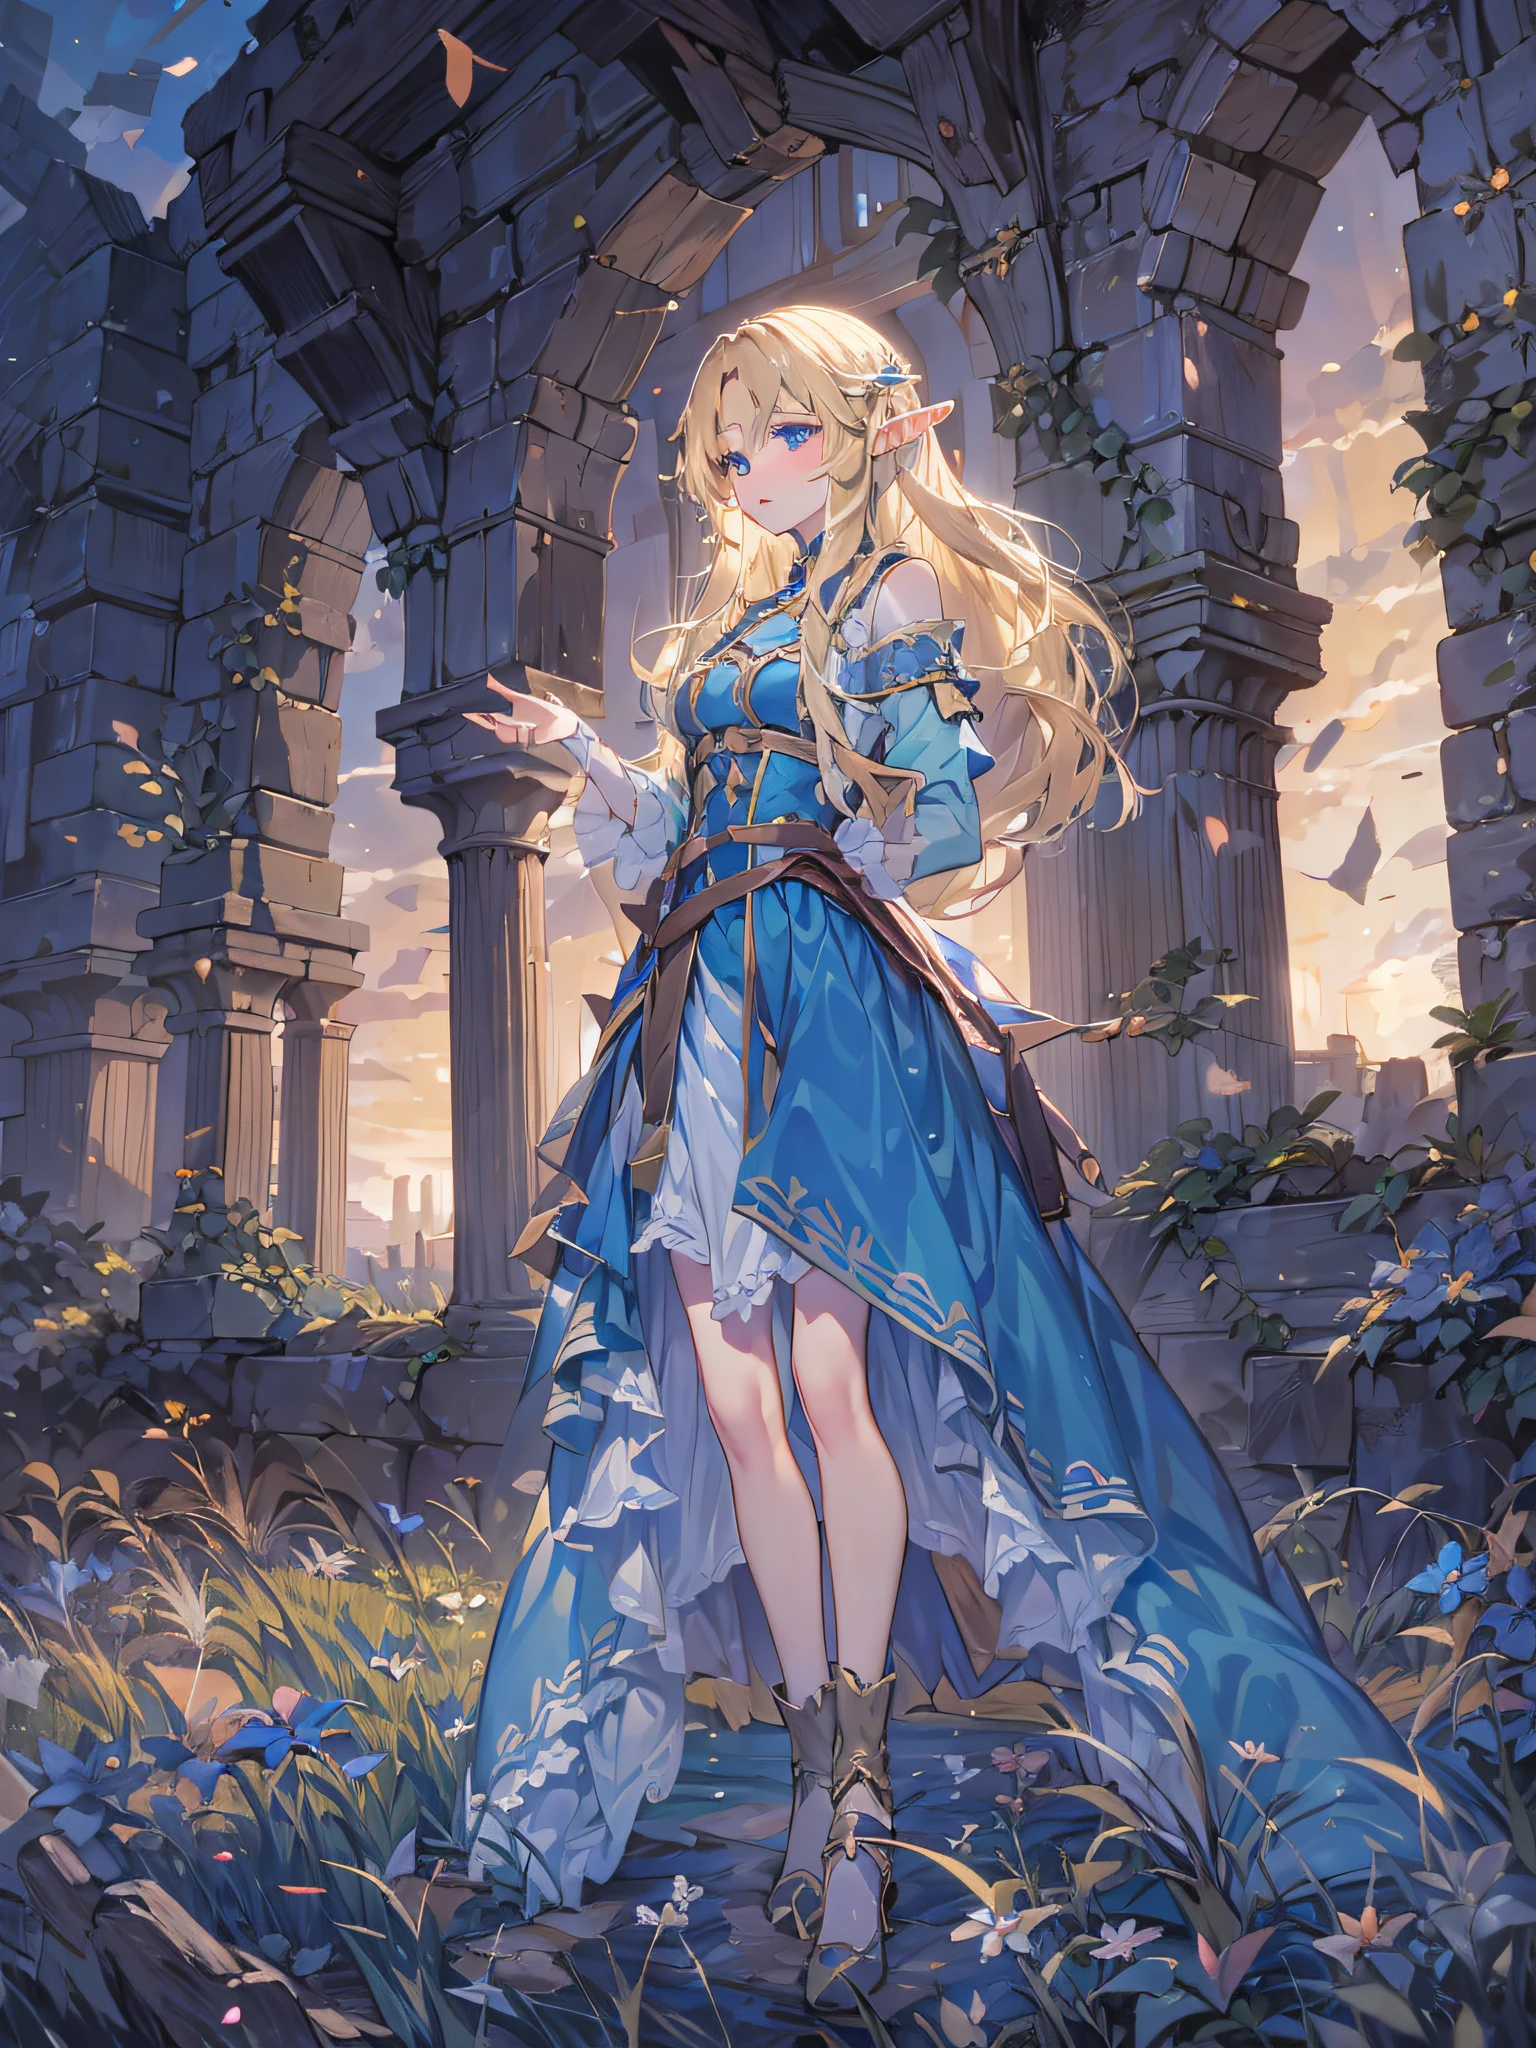 精靈女孩, 金髮長髮, 藍眼睛, 藍色洋裝, 有一個長弓, 在傍晚的暮色中, 一座古城堡的廢墟, 在草原上